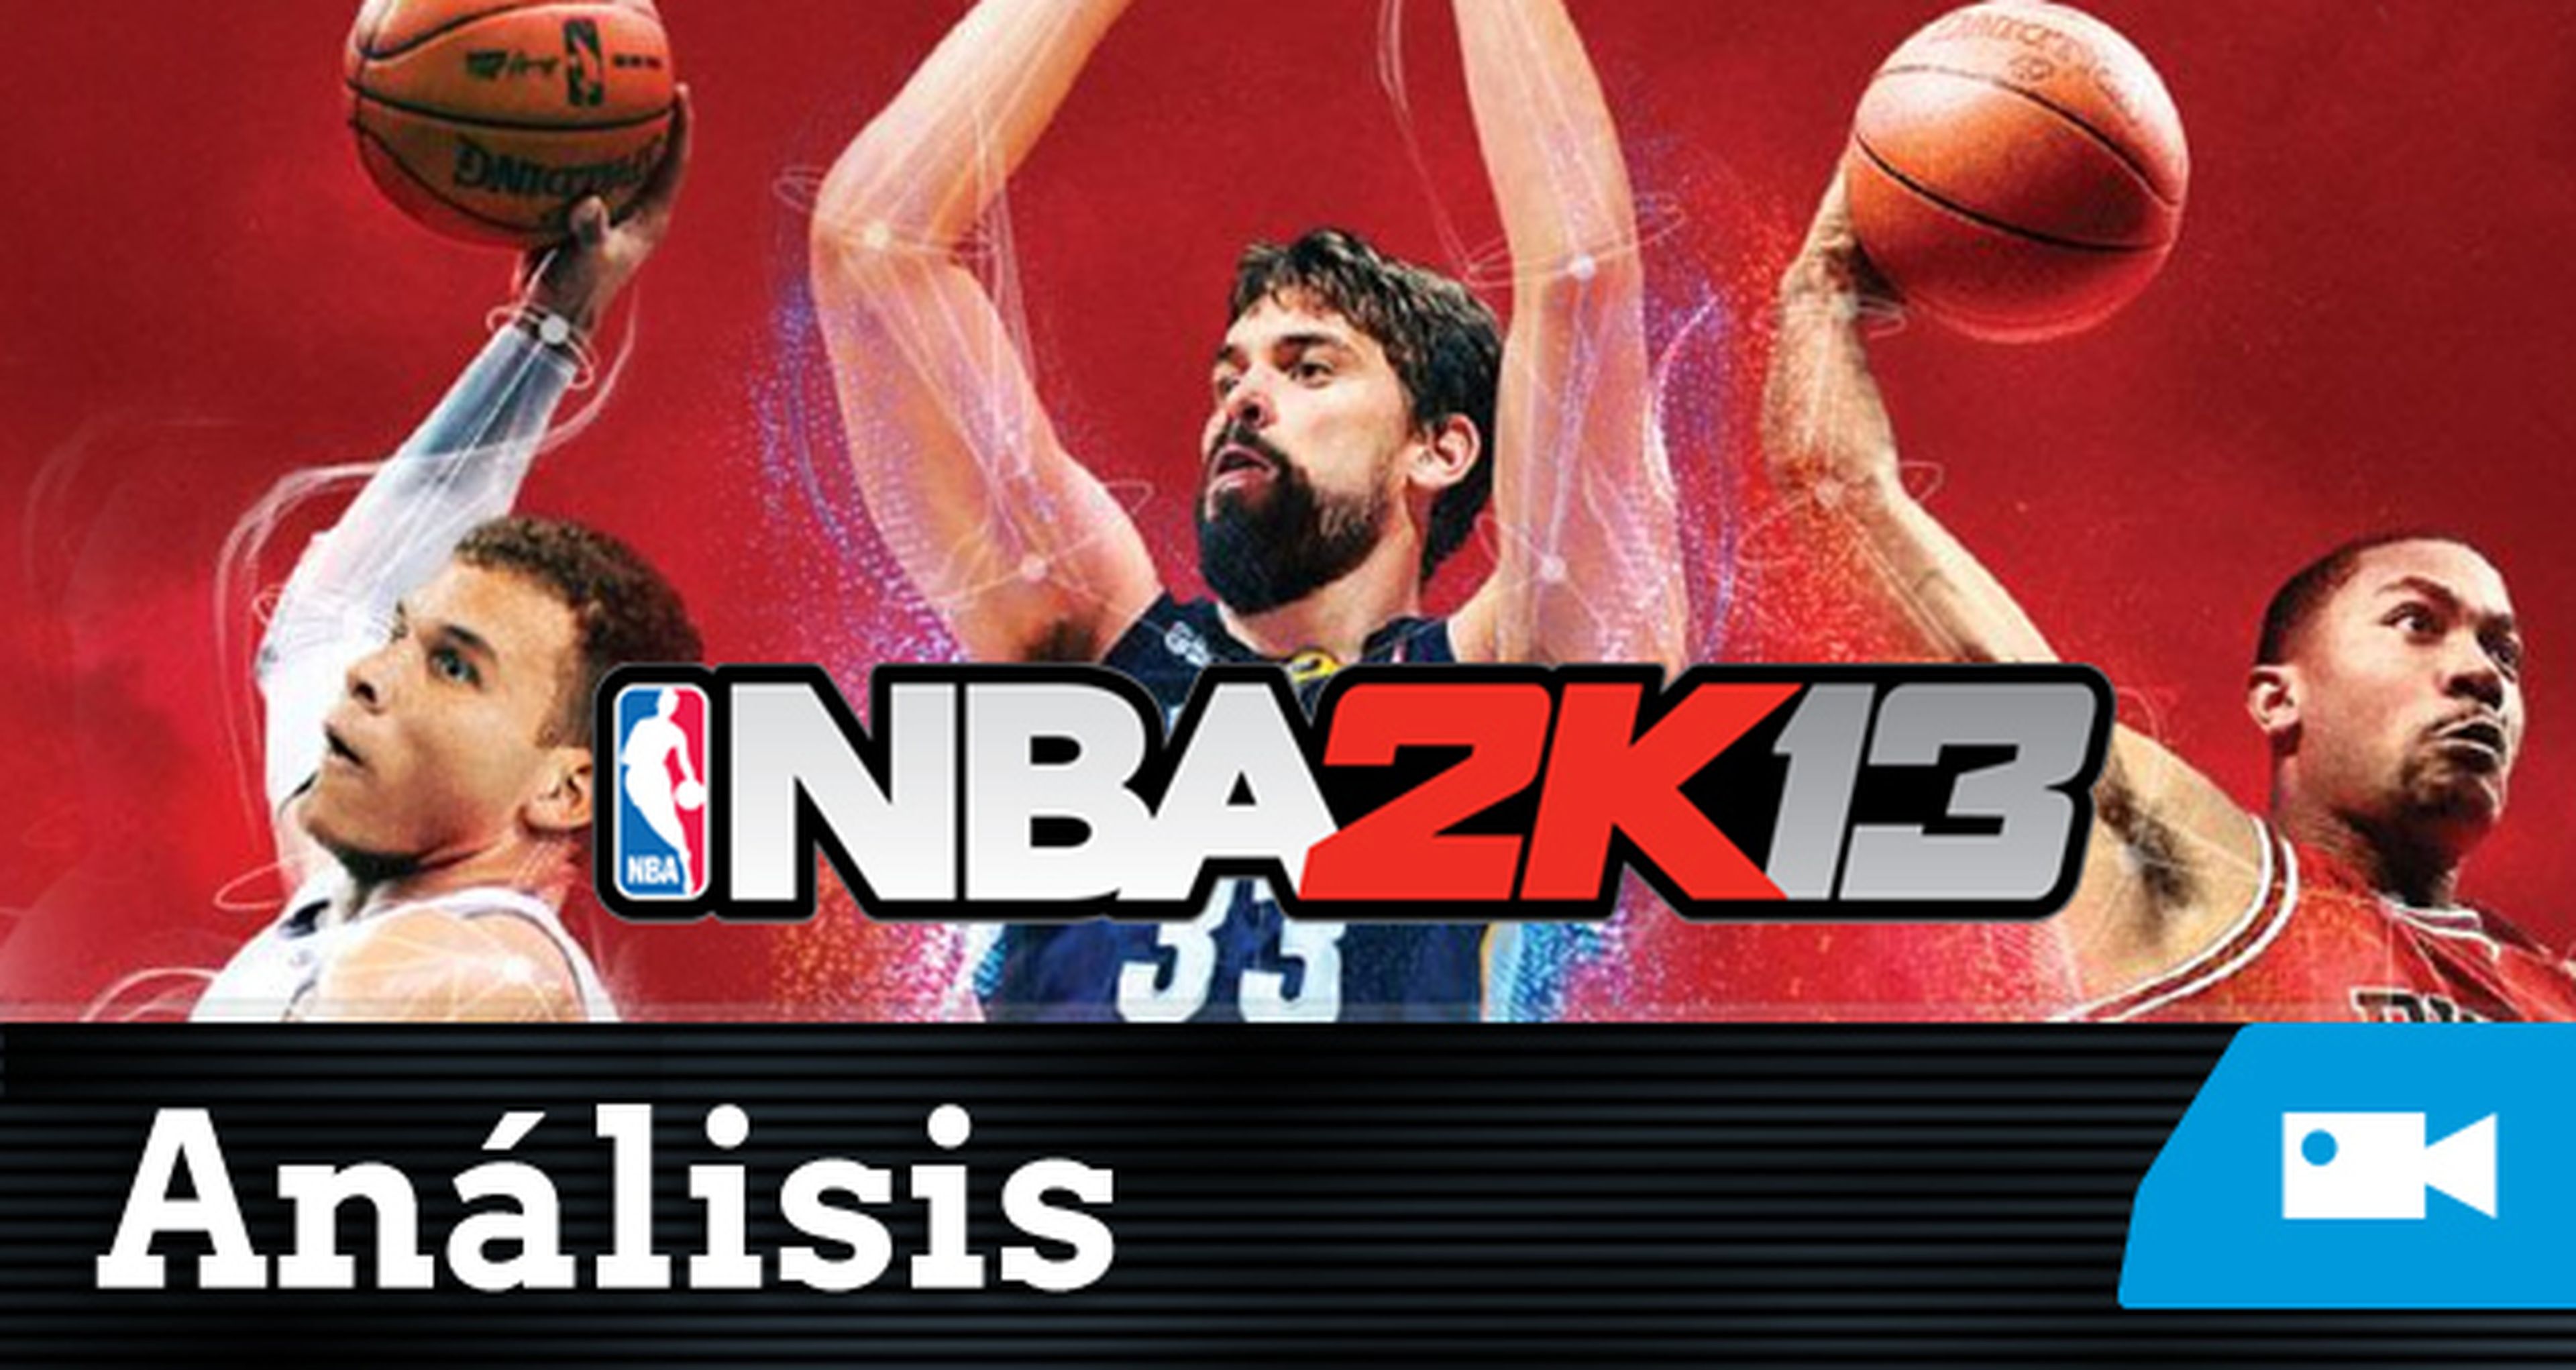 Análisis sobre la bocina de NBA 2K13